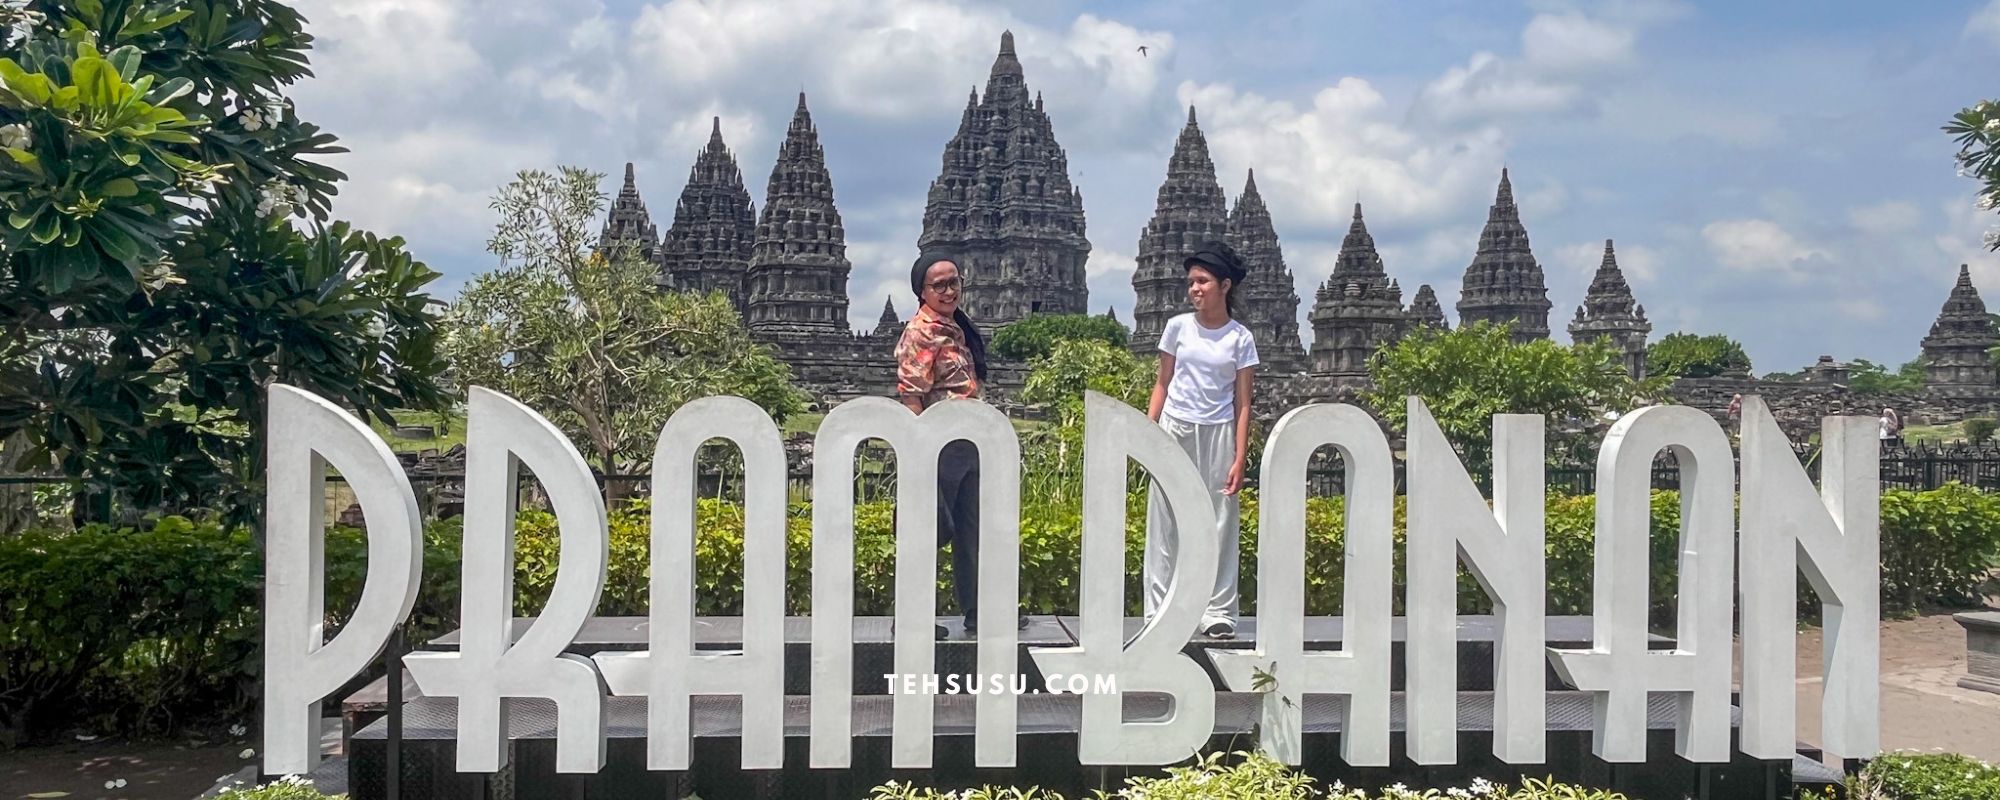 Cerita Liburan ke Jogja: Berpanas Ria di Candi Prambanan dan Kraton Ratu Boko